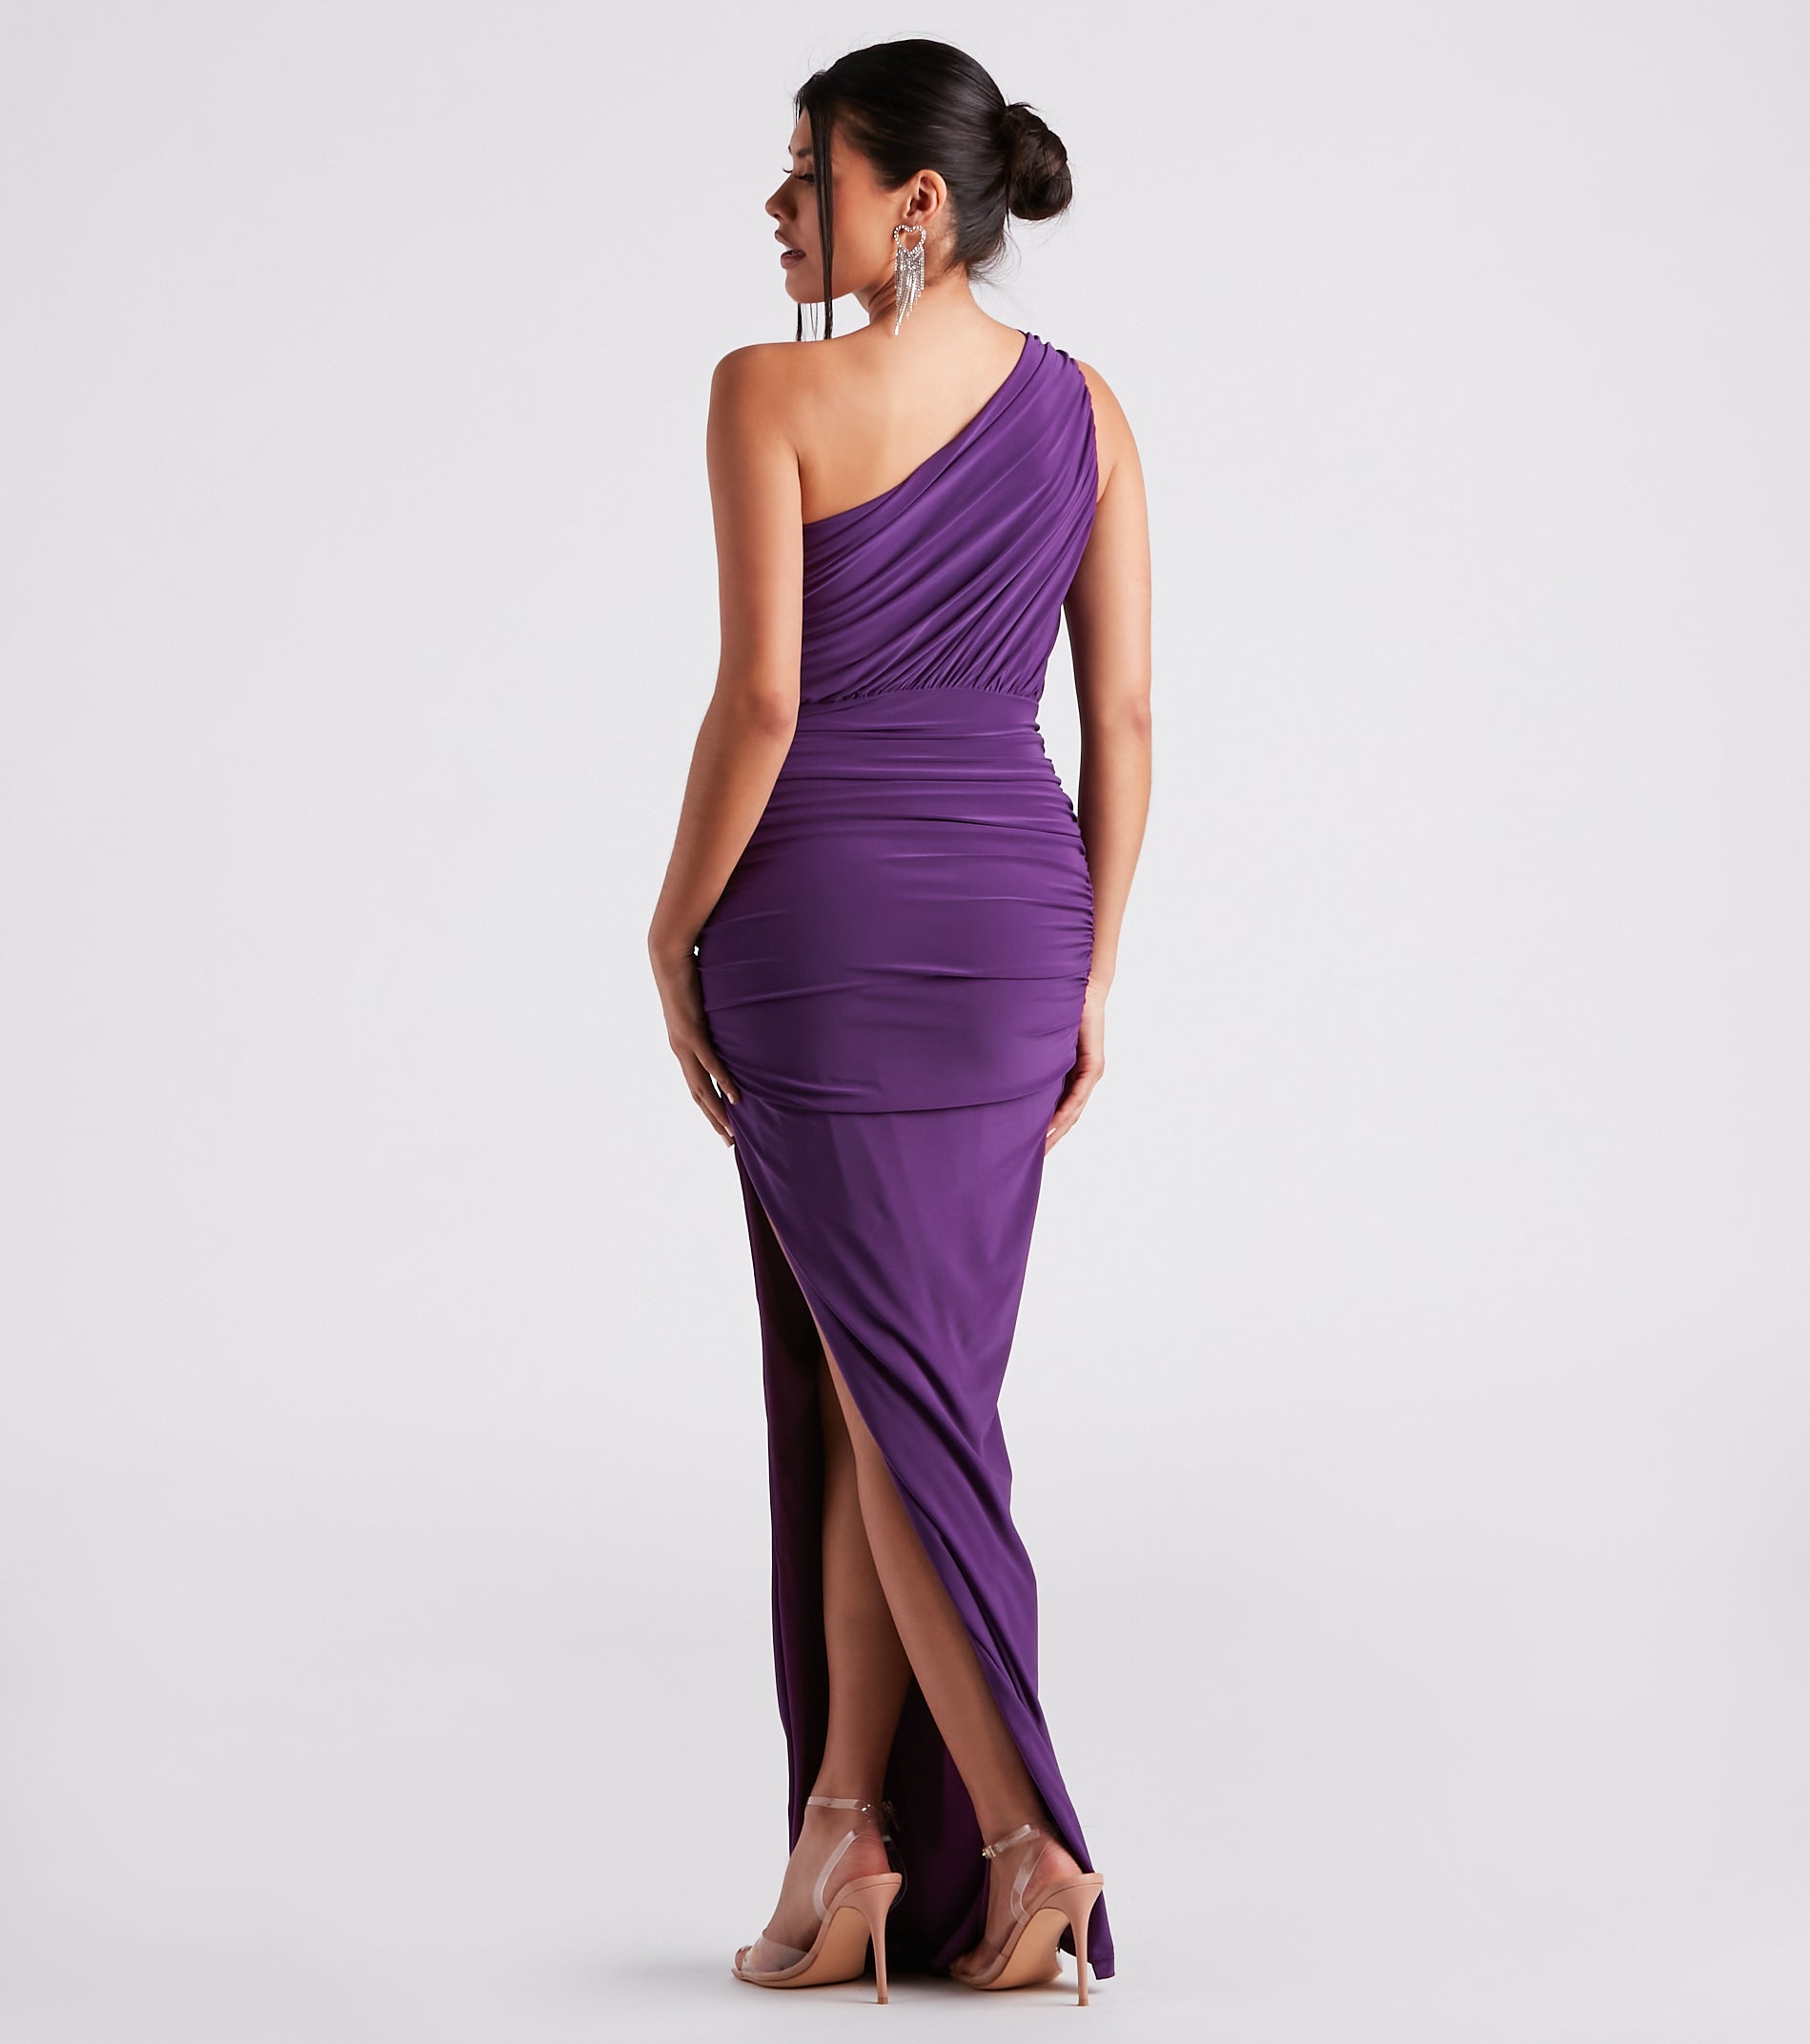 Adora Formal One-Shoulder Ruched Dress